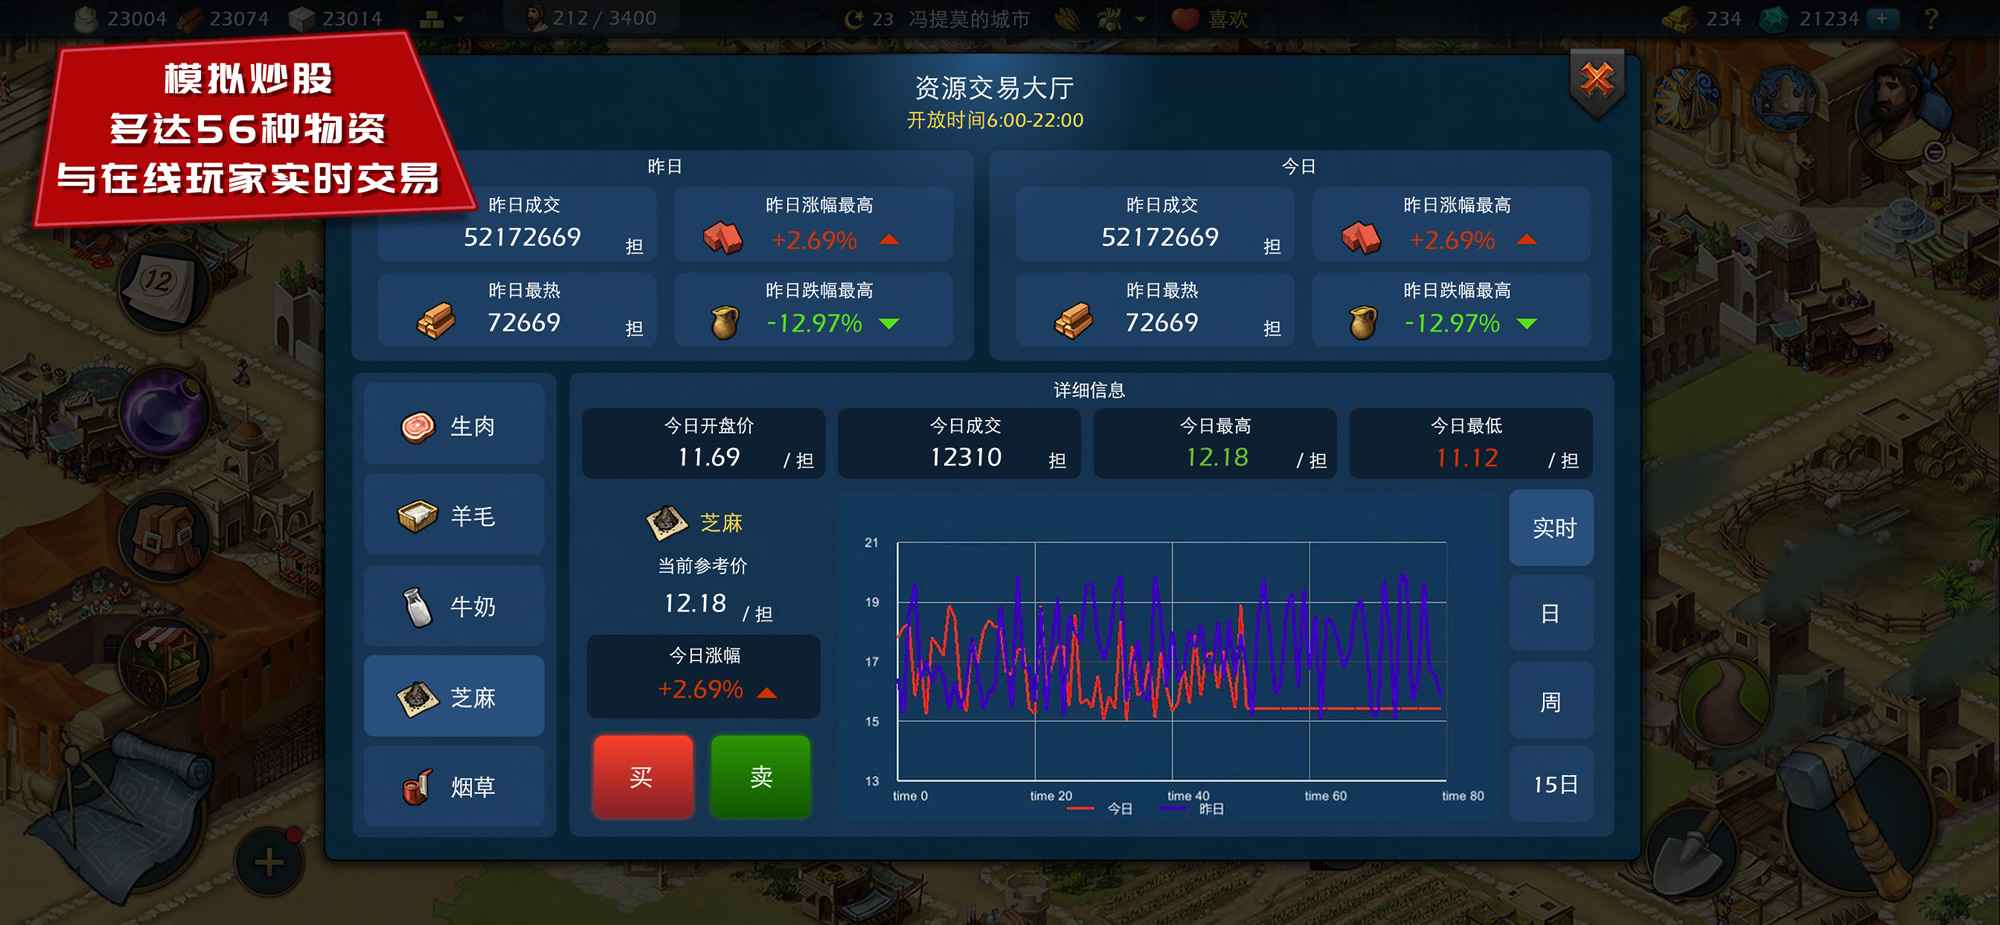 模拟帝国中国布局图3.0.6最新版最新版图2: